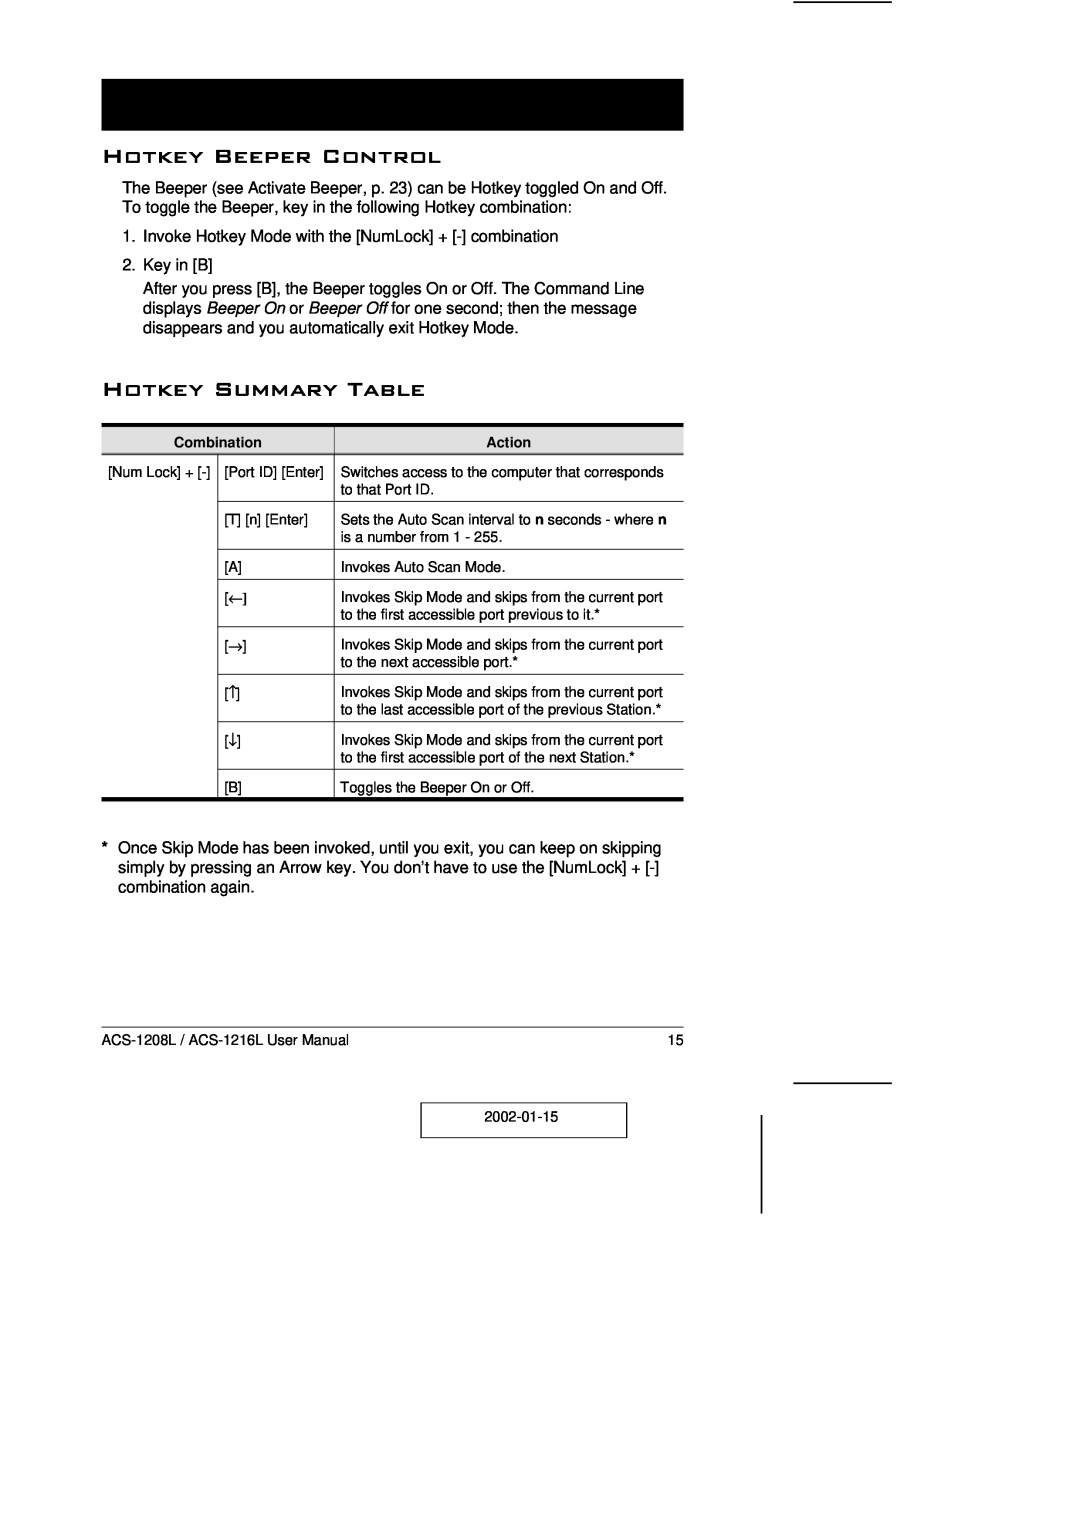 ATEN Technology ACS-1208L user manual Hotkey Beeper Control, Hotkey Summary Table 